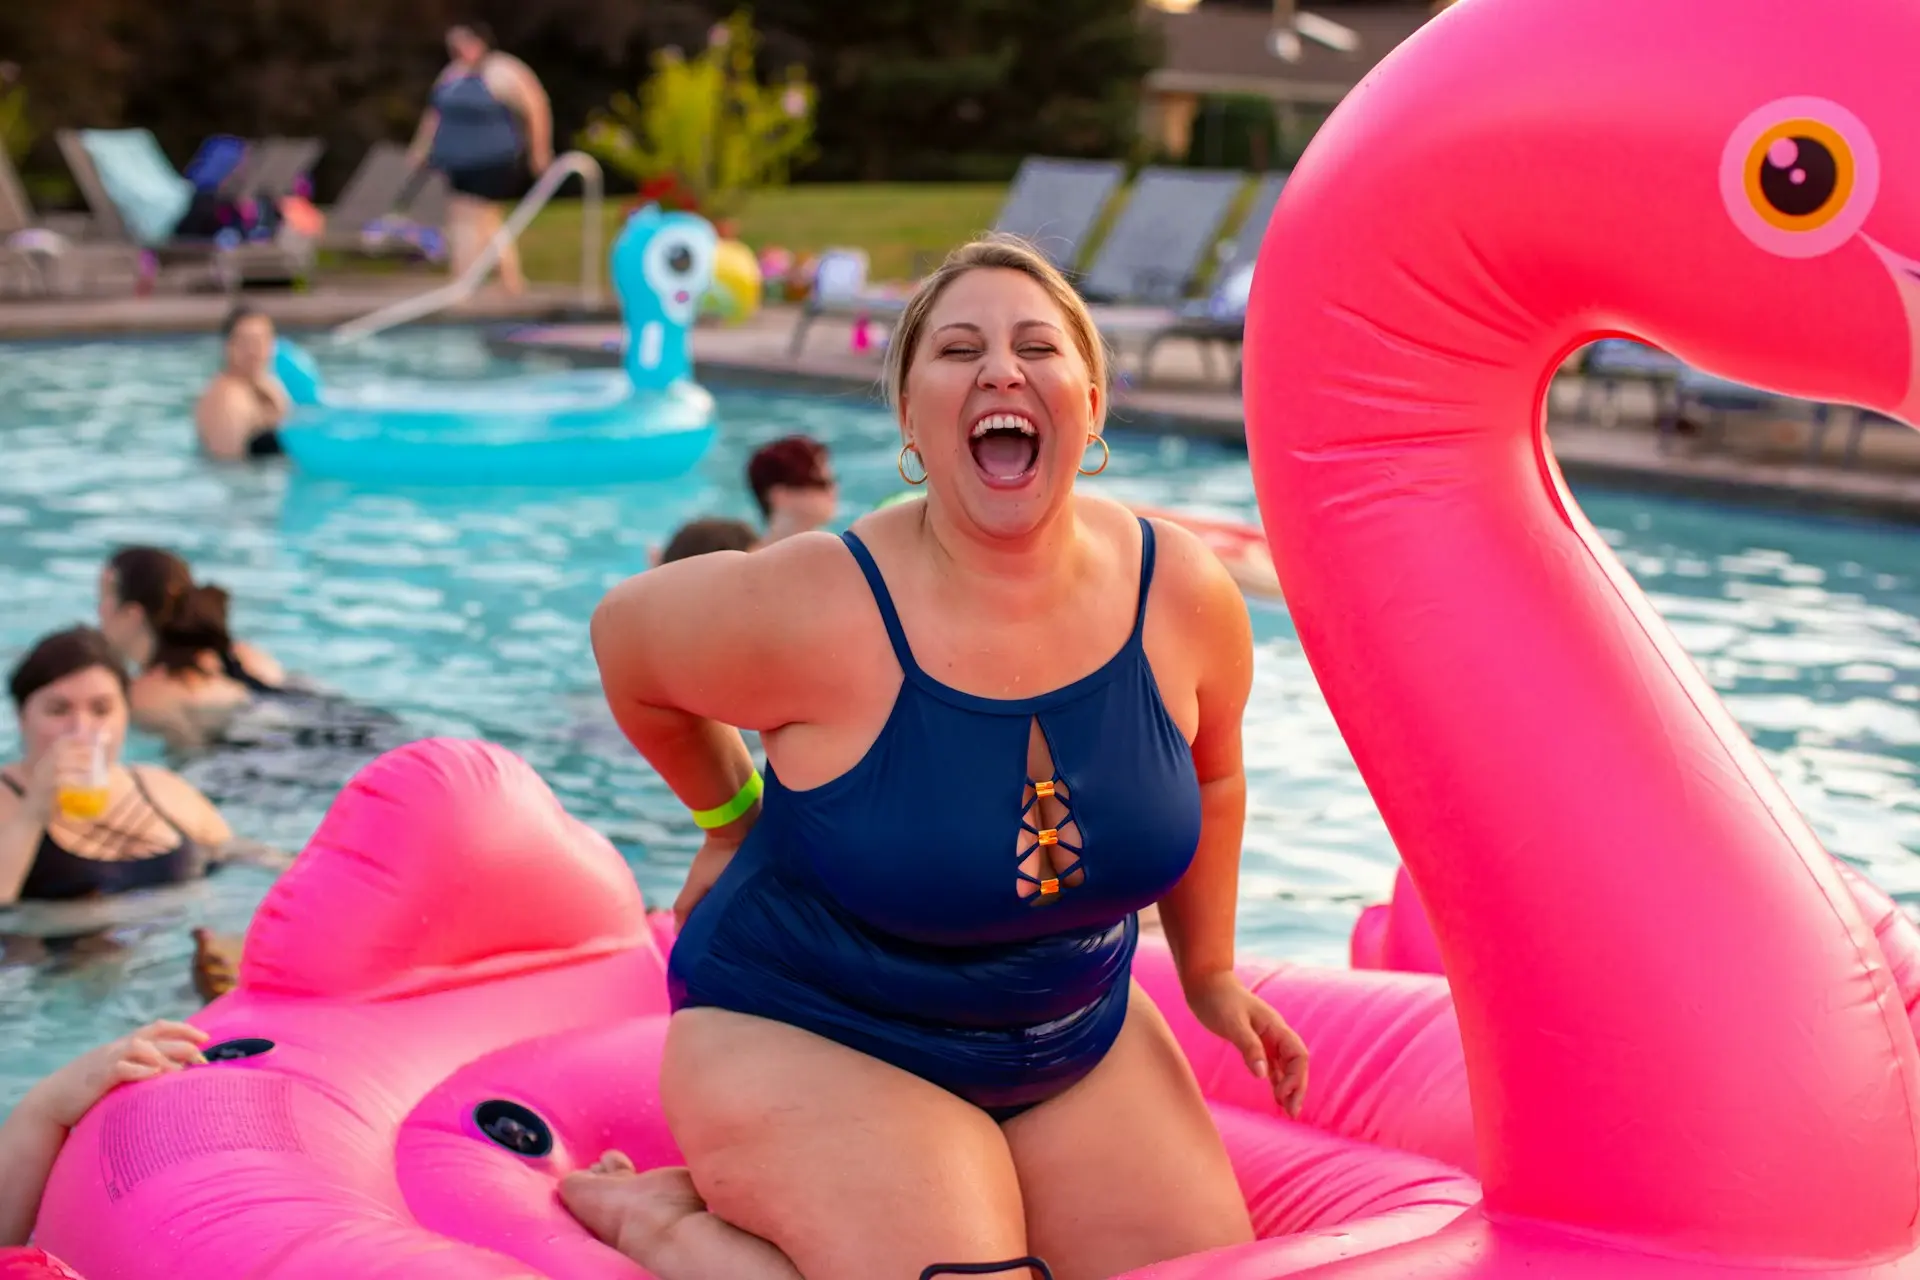 Dziewczyna w kostiumie kąpielowym śmieje się z wodnego kręgu w kształcie flaminga